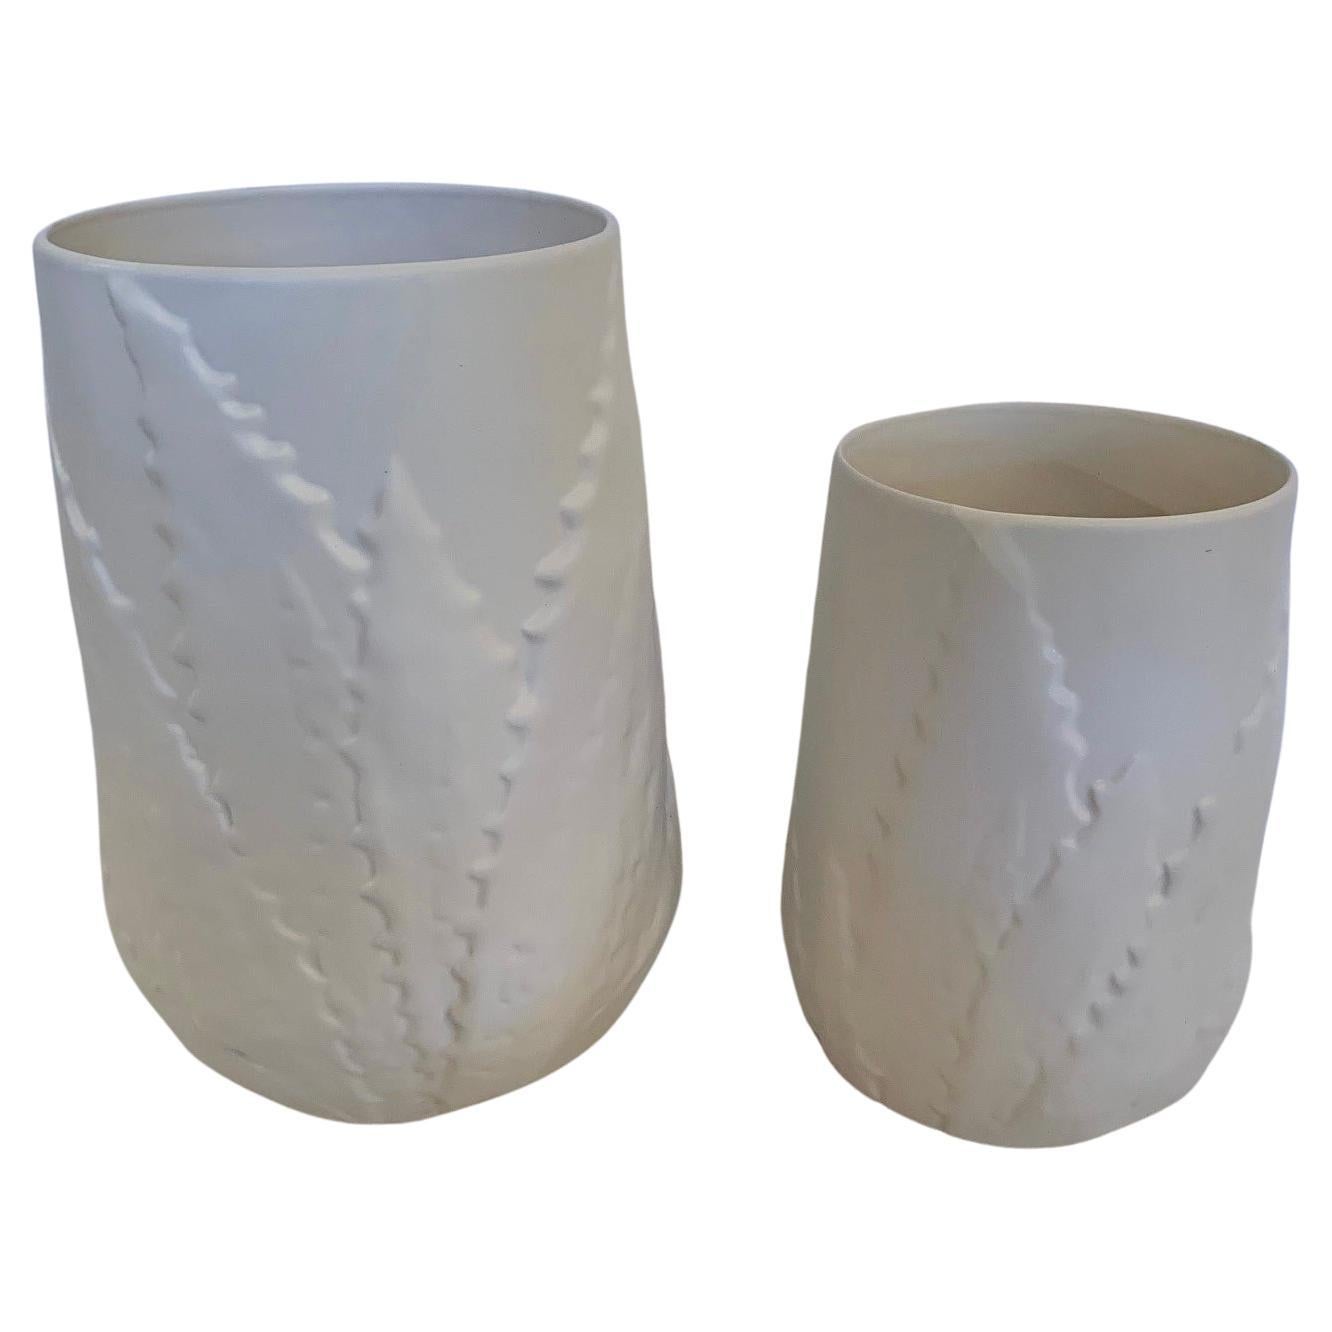 Magnifique paire de jardinières ou vases en céramique blanche